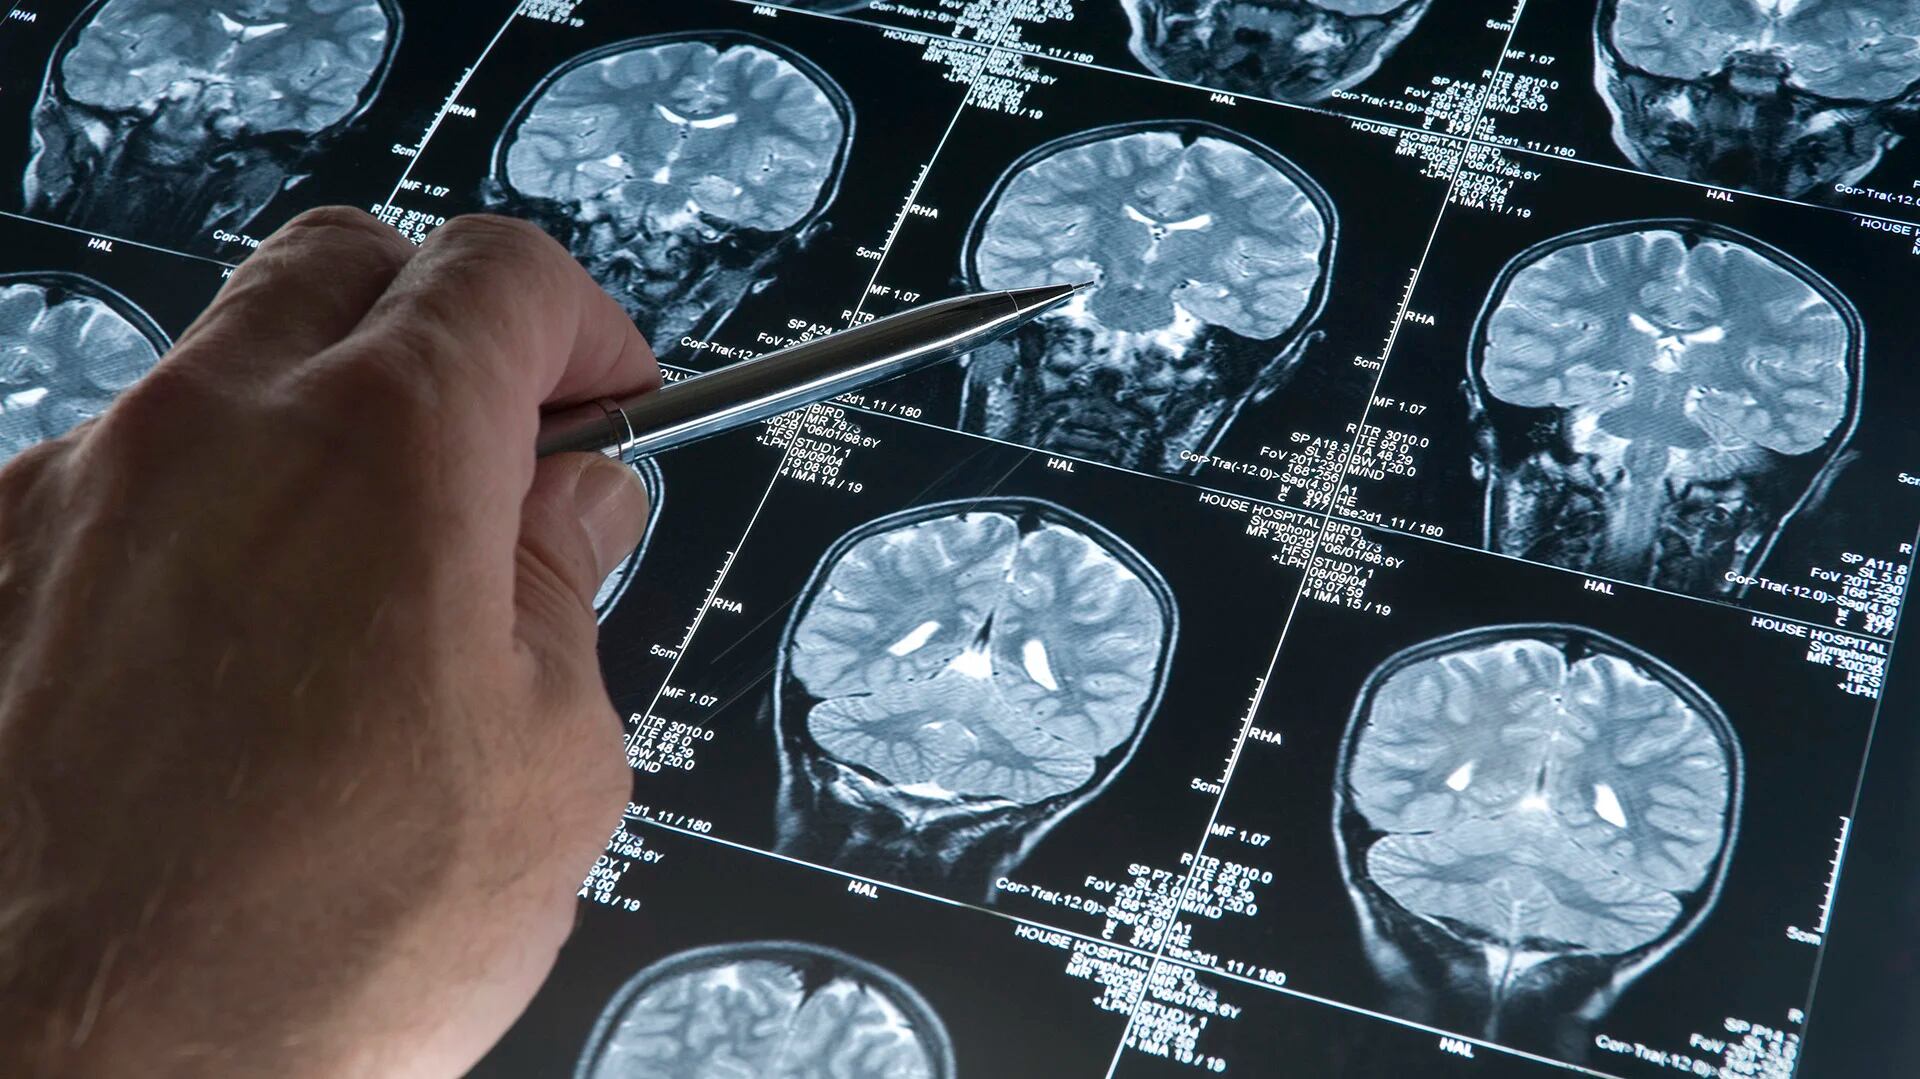 El Alzheimer afecta a más de 50 millones de personas en el mundo, y el envejecimiento de la población hace que puedan ser muchas más en las próximas décadas
(Getty Images)